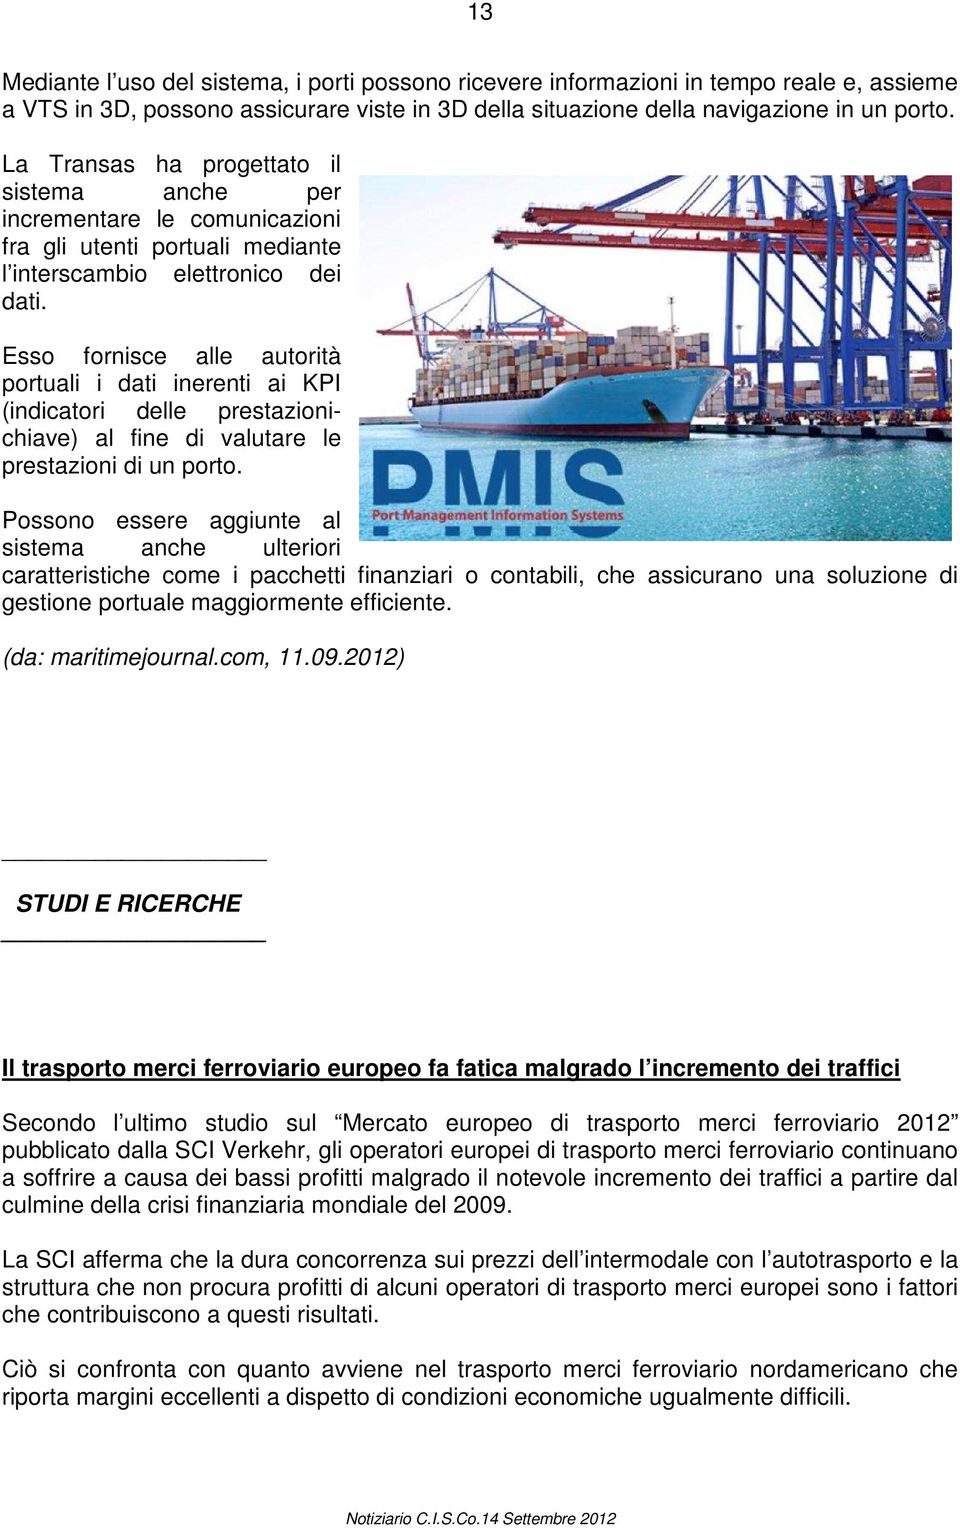 Esso fornisce alle autorità portuali i dati inerenti ai KPI (indicatori delle prestazionichiave) al fine di valutare le prestazioni di un porto.